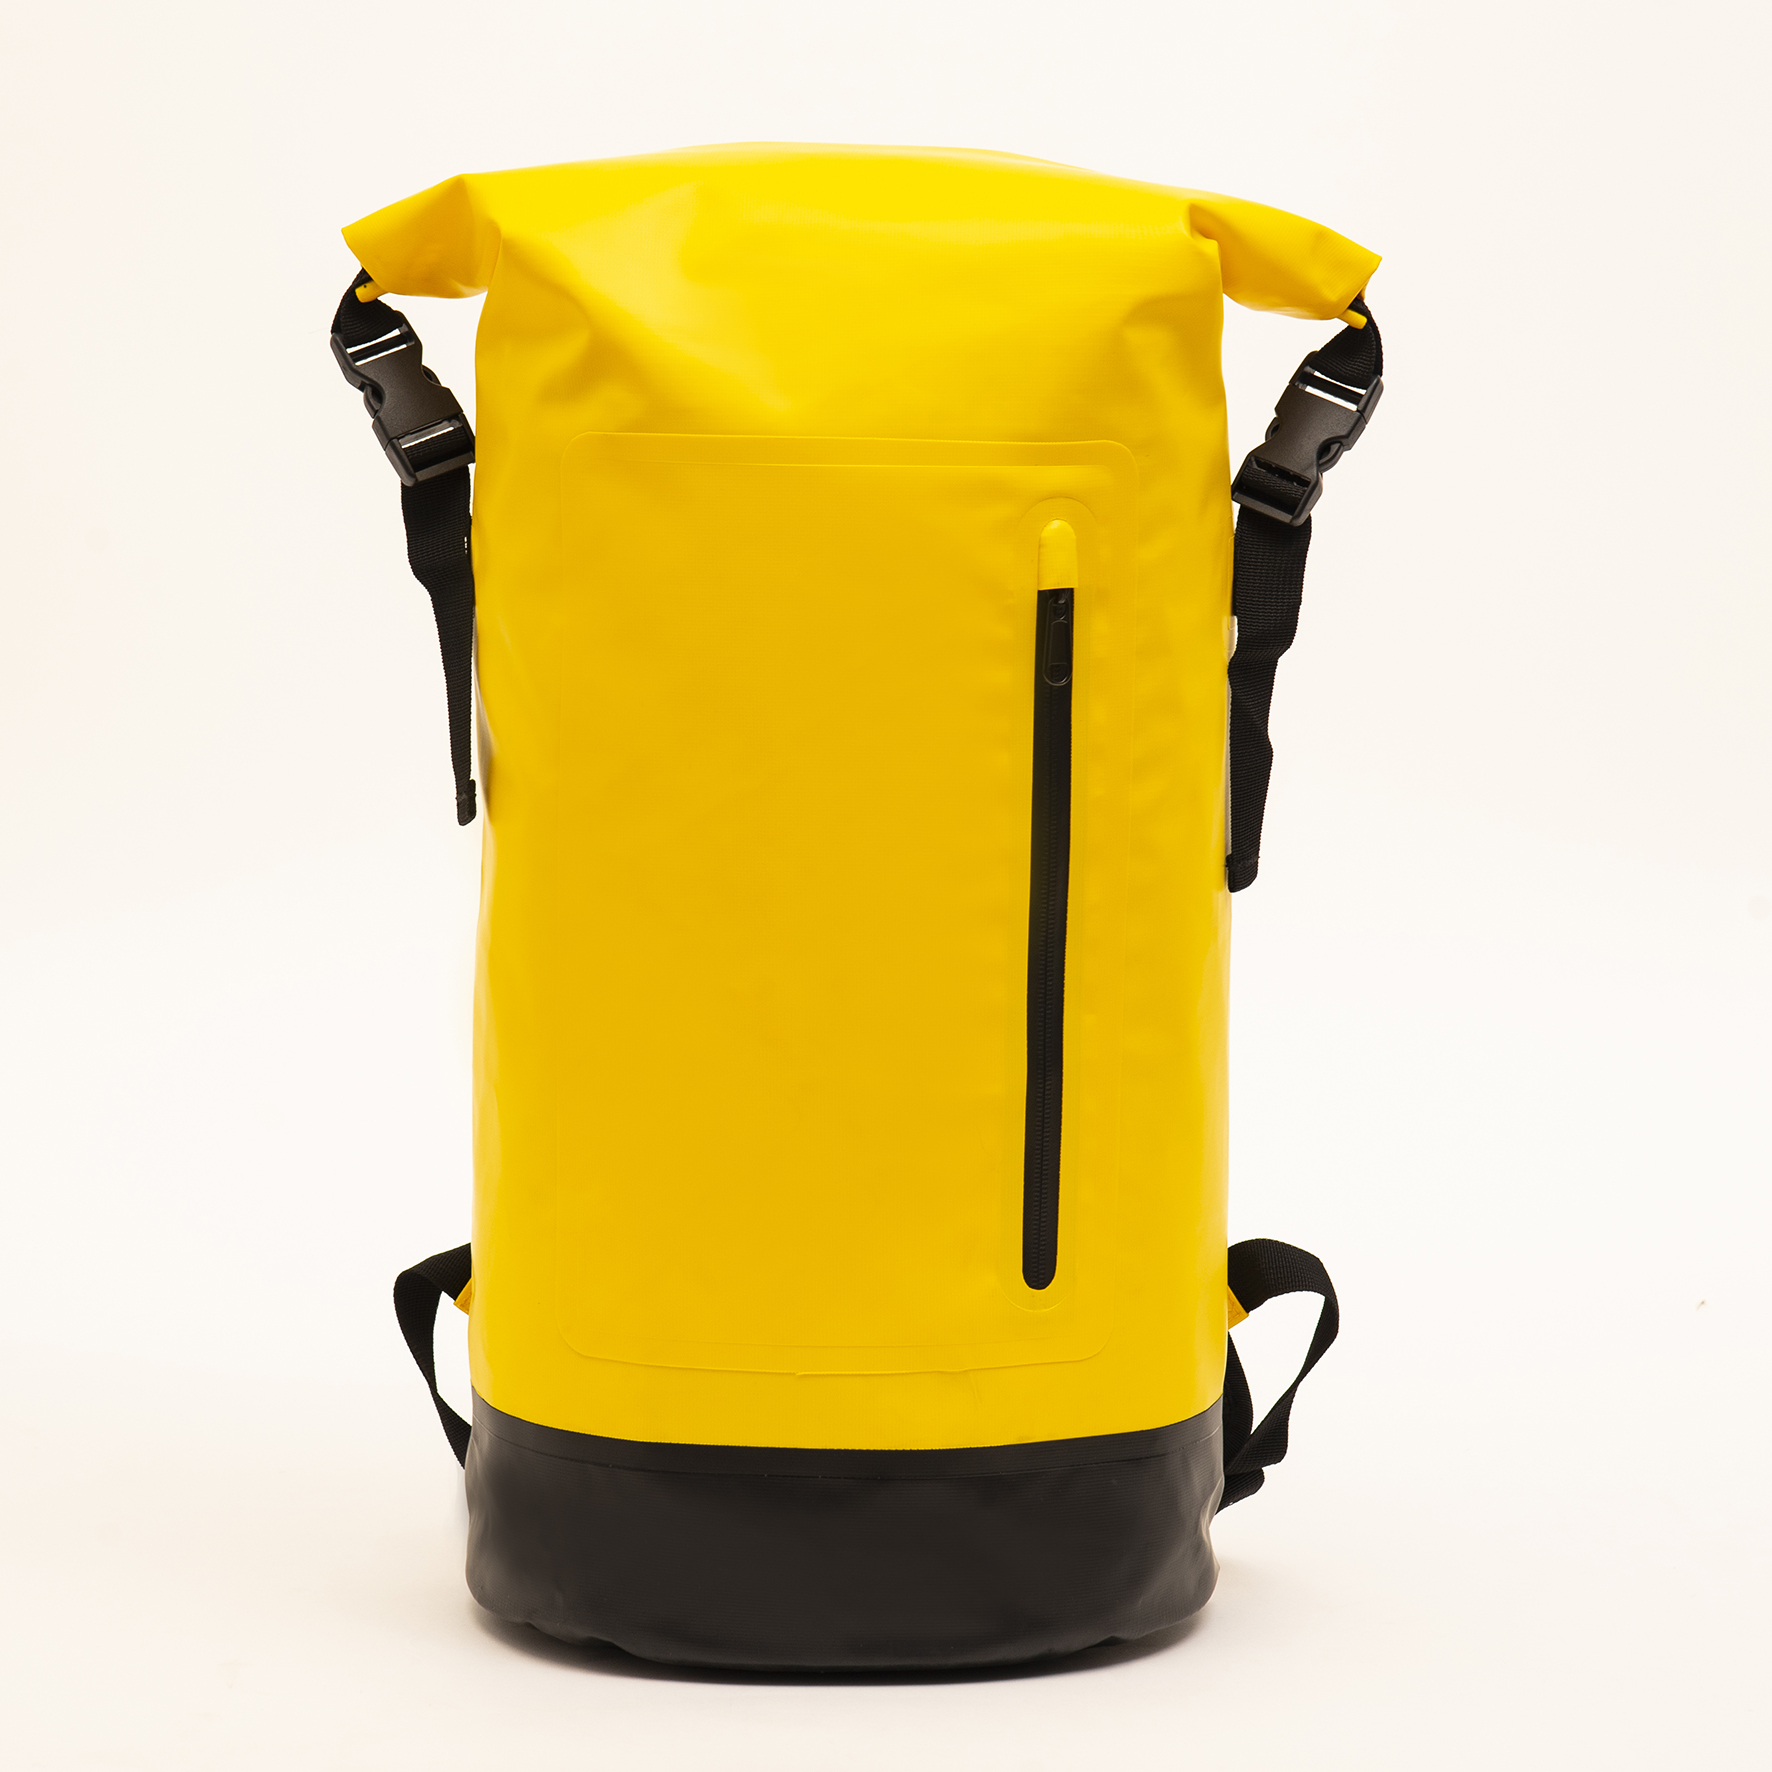 Lowest Price for Sports Backpack - 30L Multi-function large capacity waterproof dry bag beach waterproof bag beach backpack – Twinkling Star